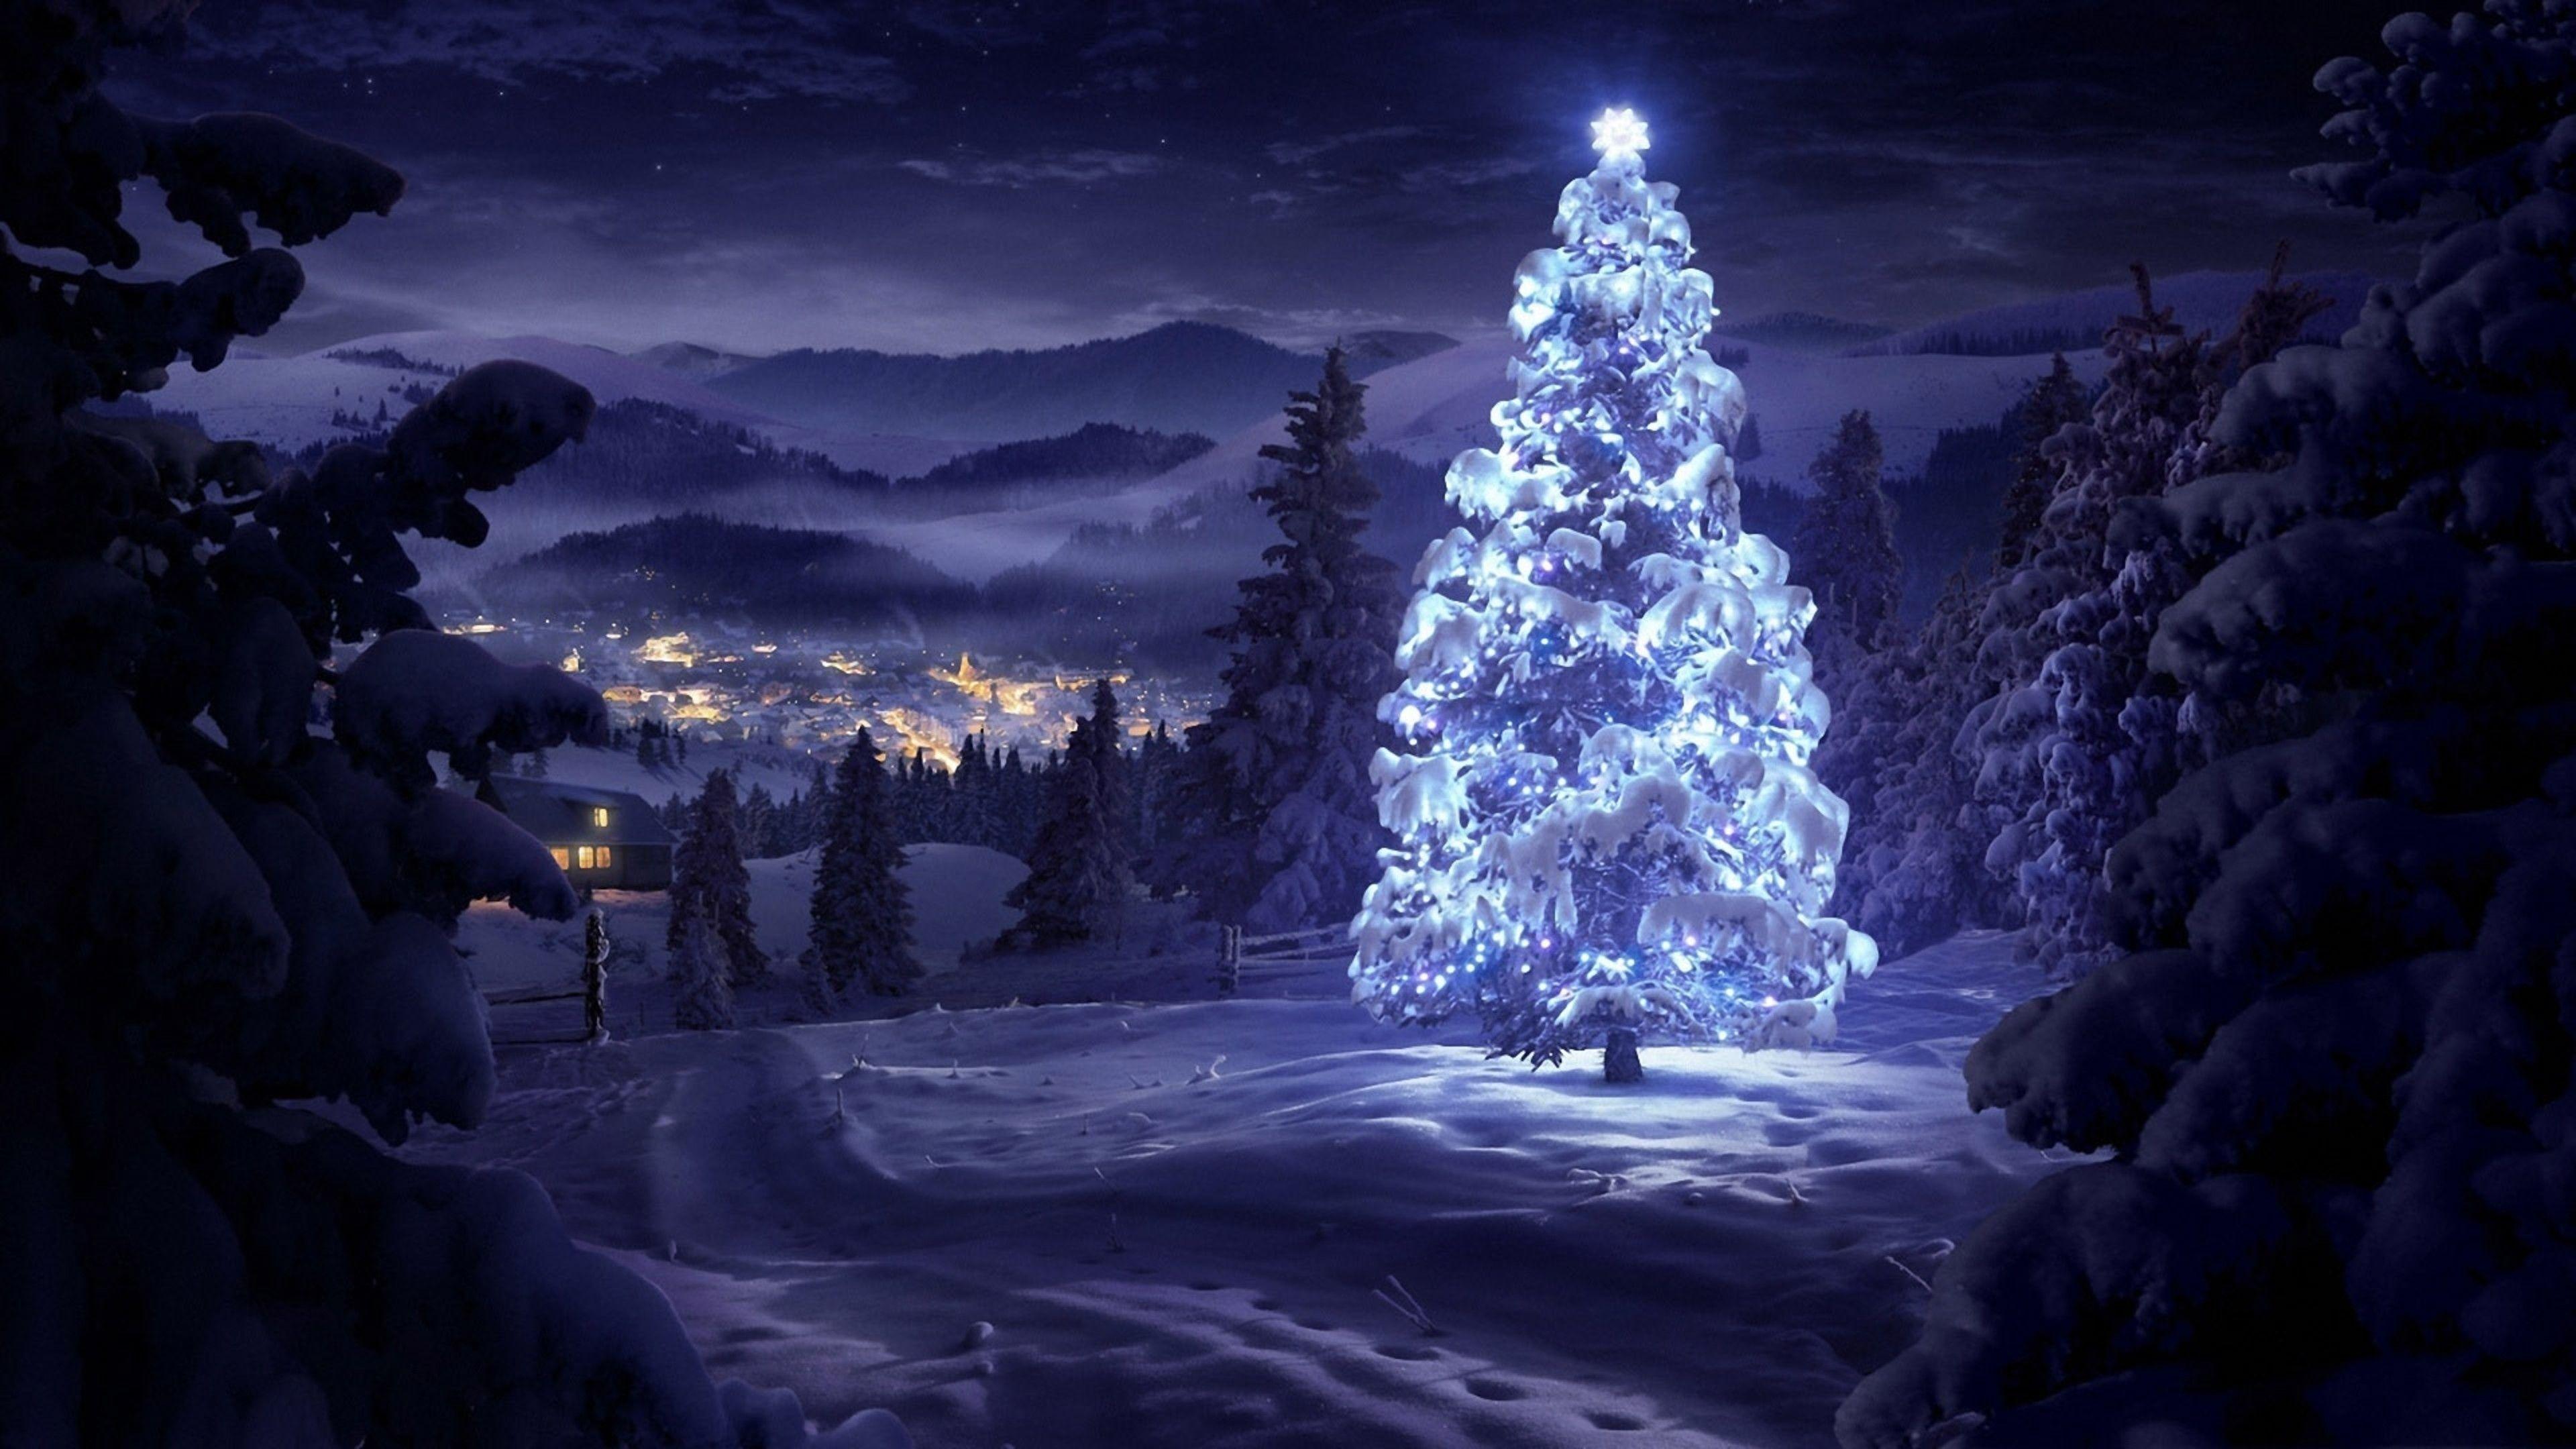 Đừng bỏ lỡ cơ hội tải những hình nền Giáng Sinh đẹp như tranh vẽ với cảnh núi non thiên nhiên tuyệt đẹp. Bạn sẽ cảm nhận được sự yên bình và đẹp mắt từ những bức hình này.